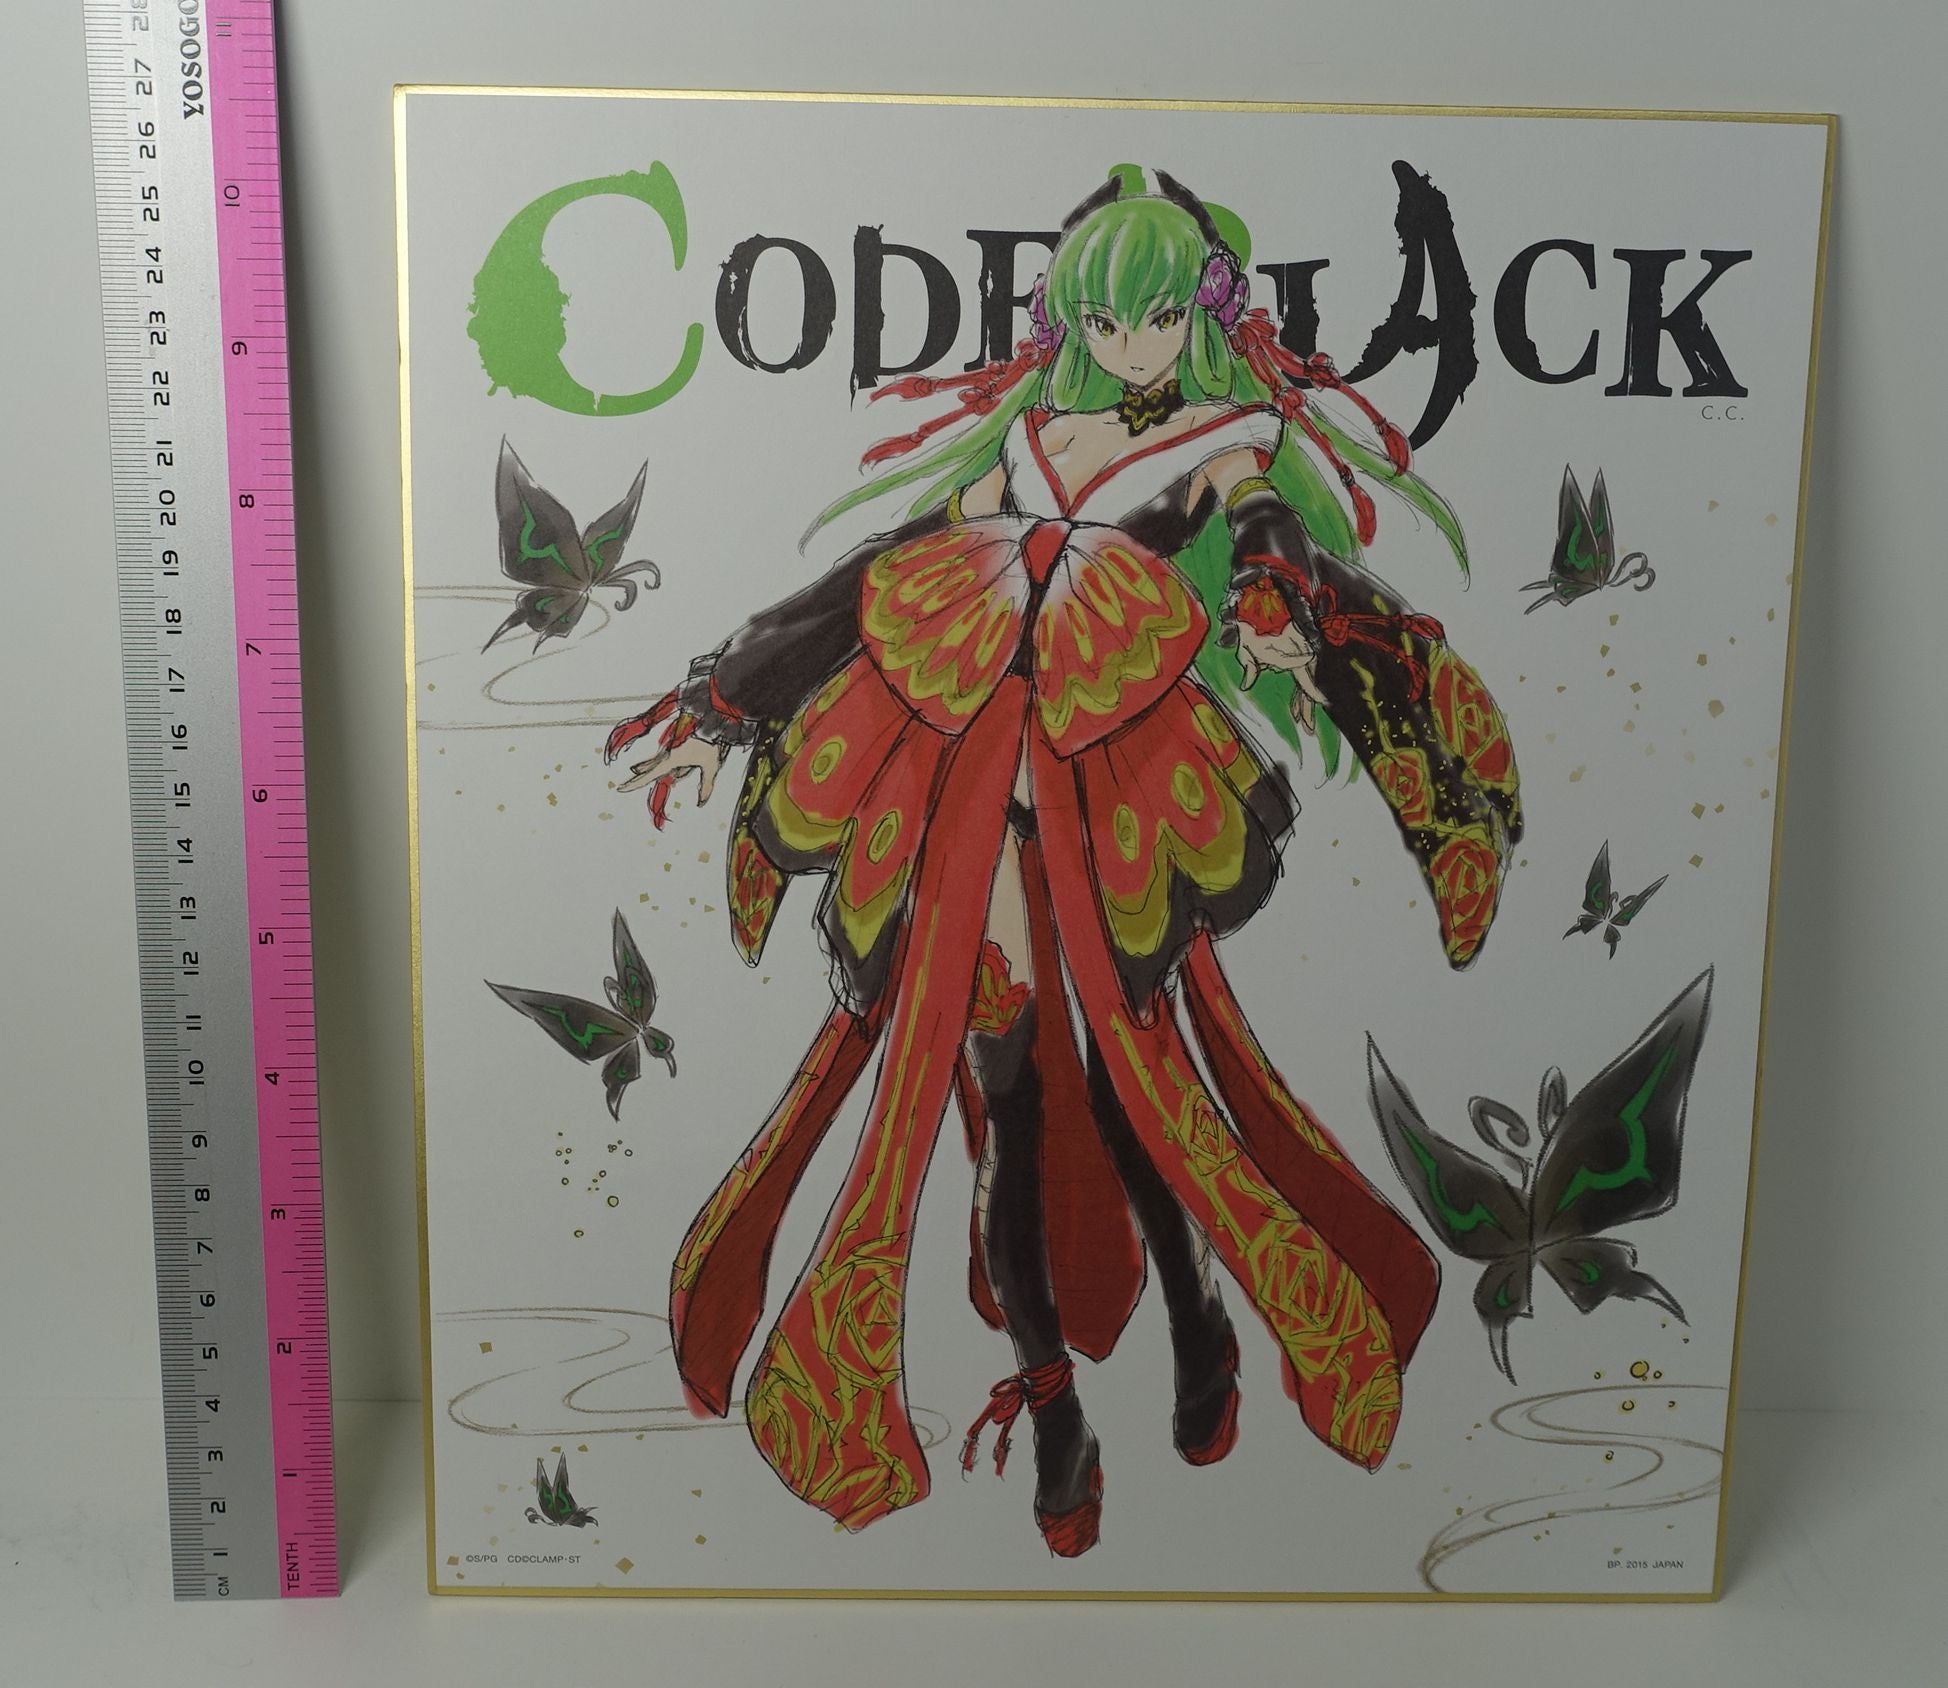 Code Geass Code Black Shikishi Art Board 27x24cm C.C.